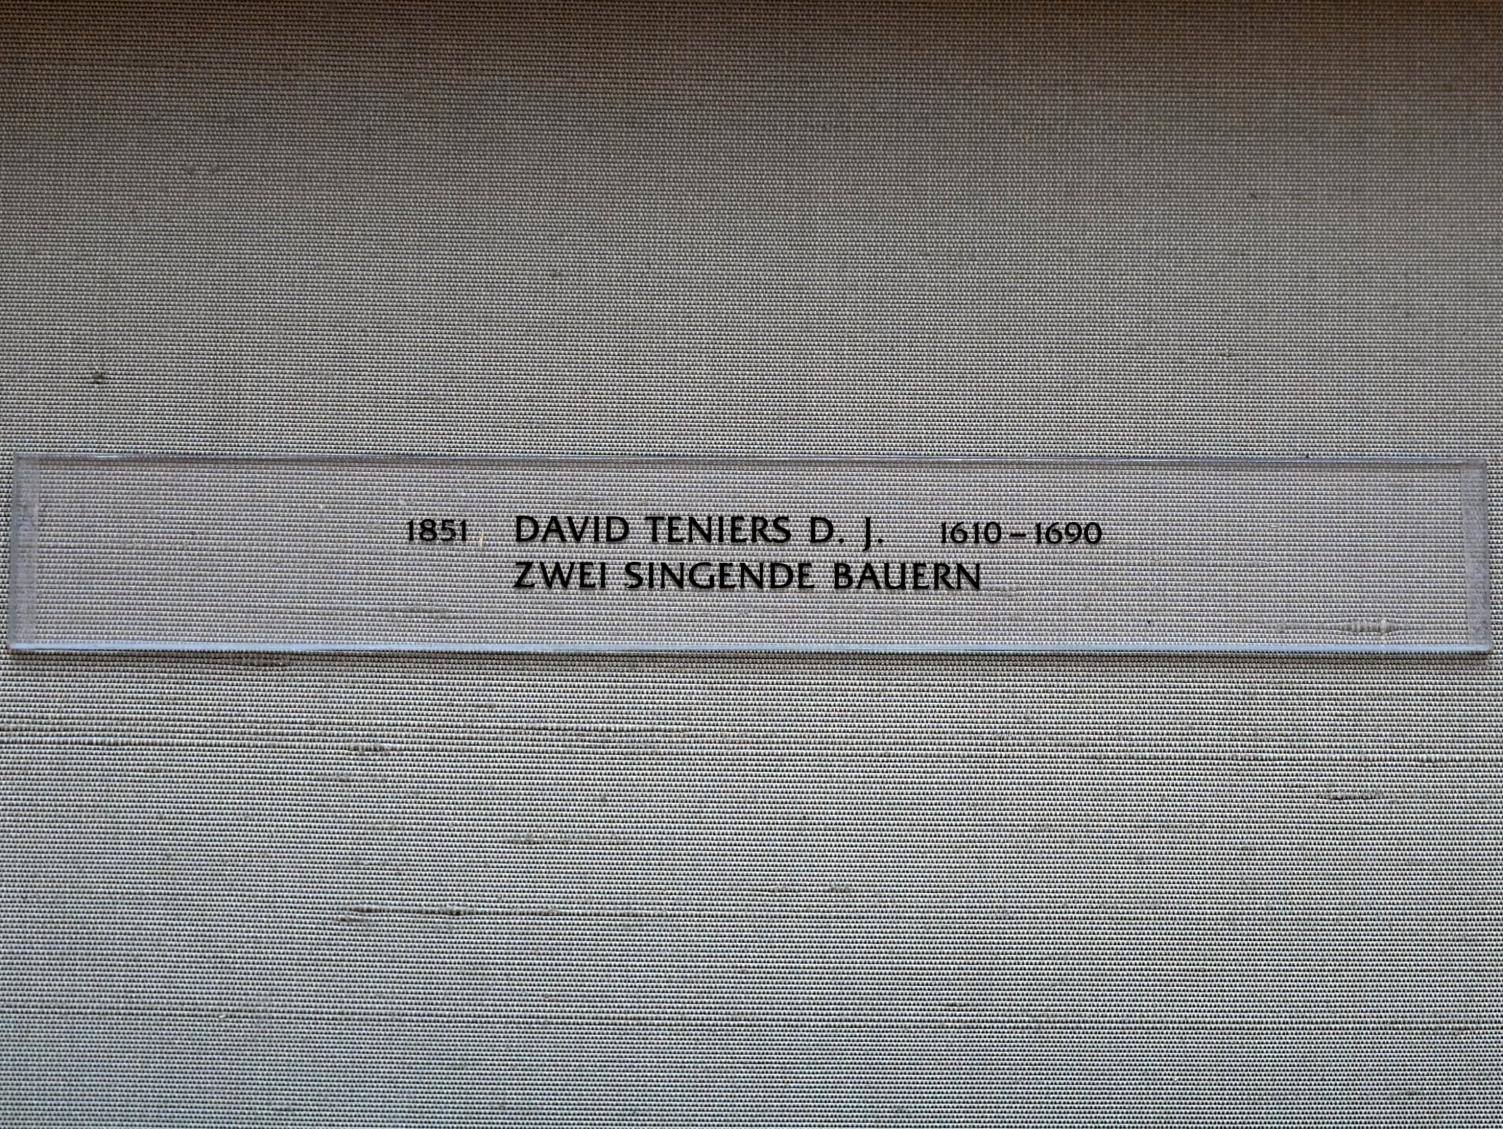 David Teniers der Jüngere (1633–1682), Zwei singende Bauern, München, Alte Pinakothek, Obergeschoss Kabinett 11, um 1633, Bild 2/2